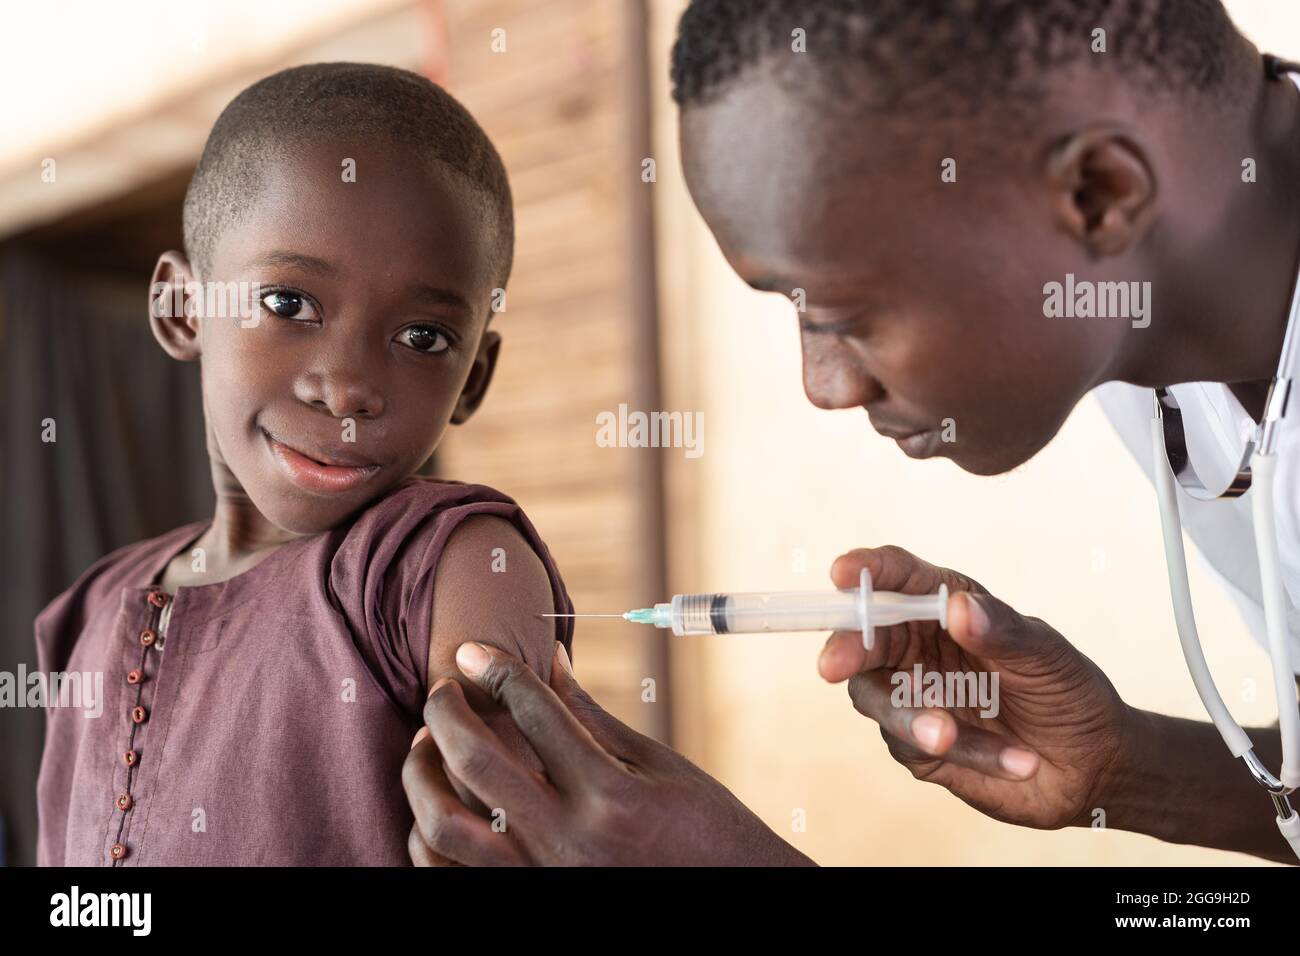 Mignon petit garçon africain noir regardant la caméra pendant la vaccination de routine; concept de prévention de maladie d'enfance Banque D'Images